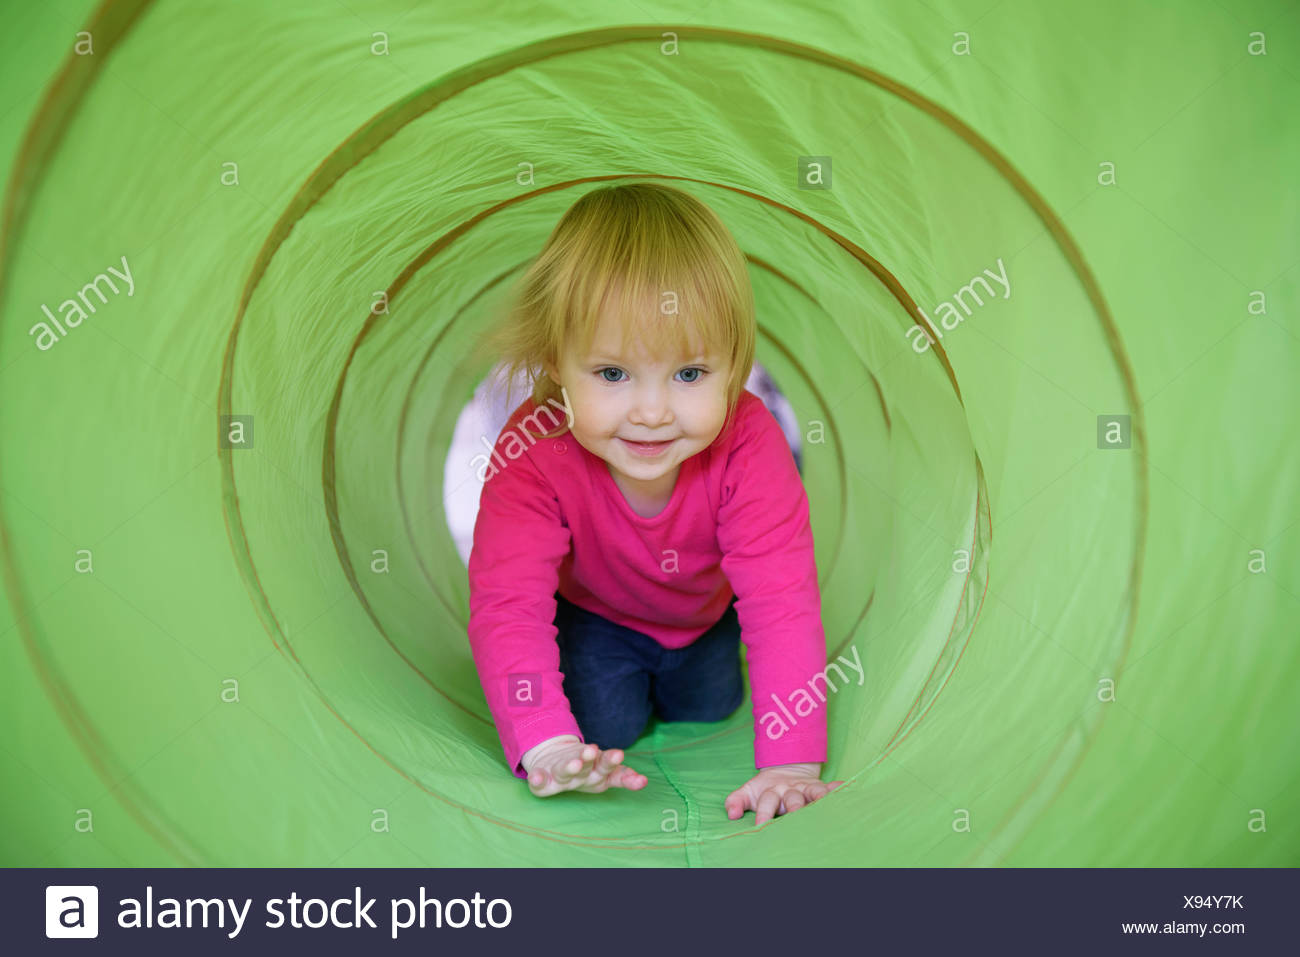 crawling through a tunnel